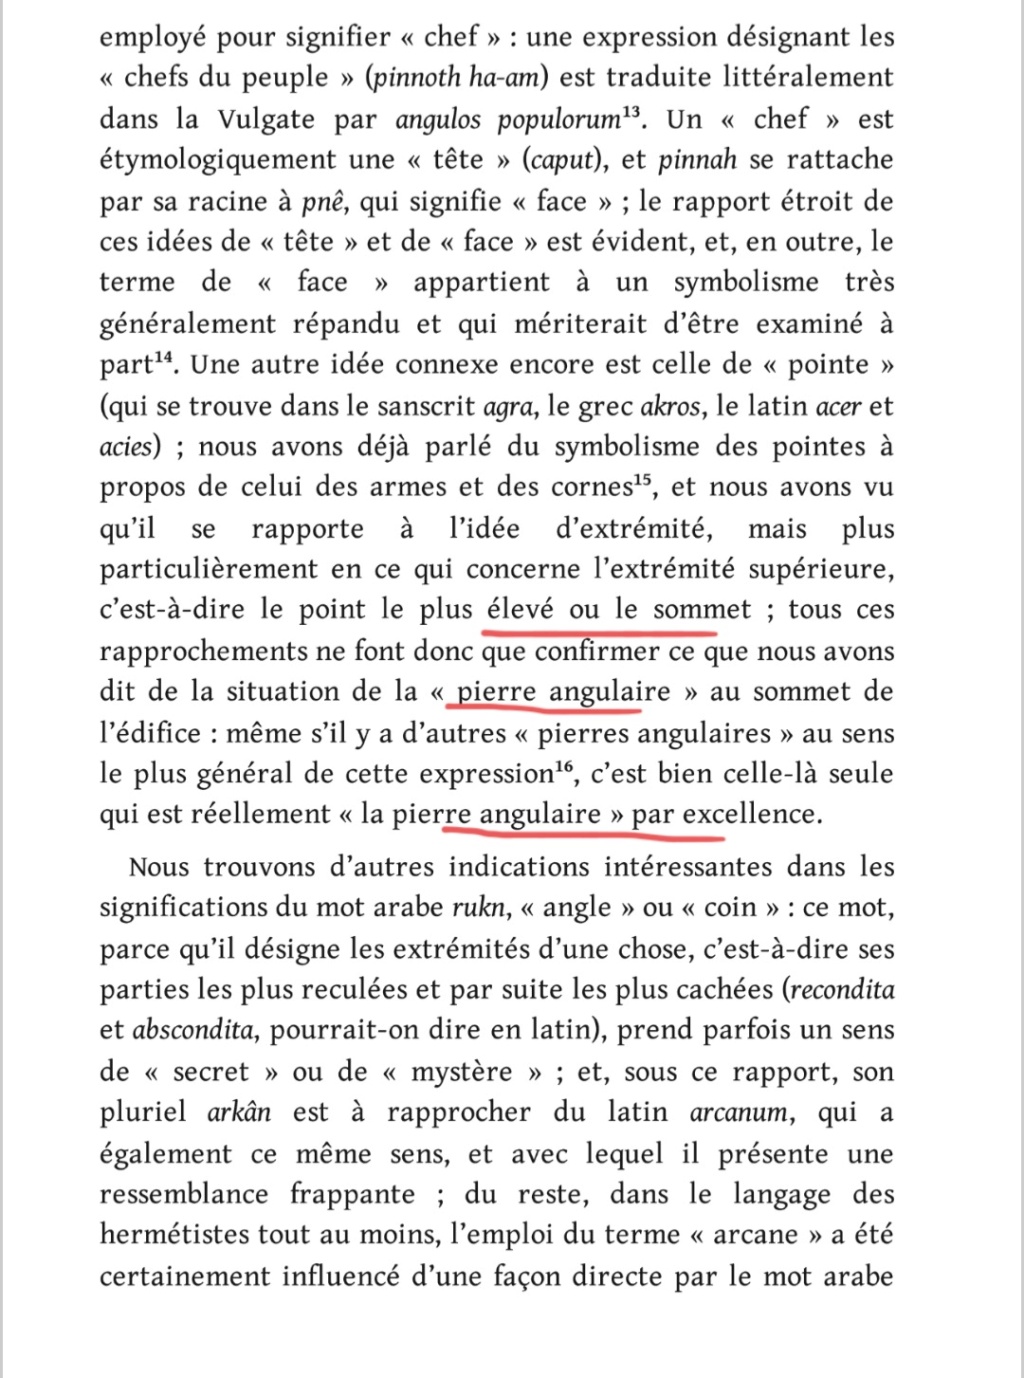 La franc-maçonnerie, la Gnose et le gnosticisme.  - Page 5 Scree526